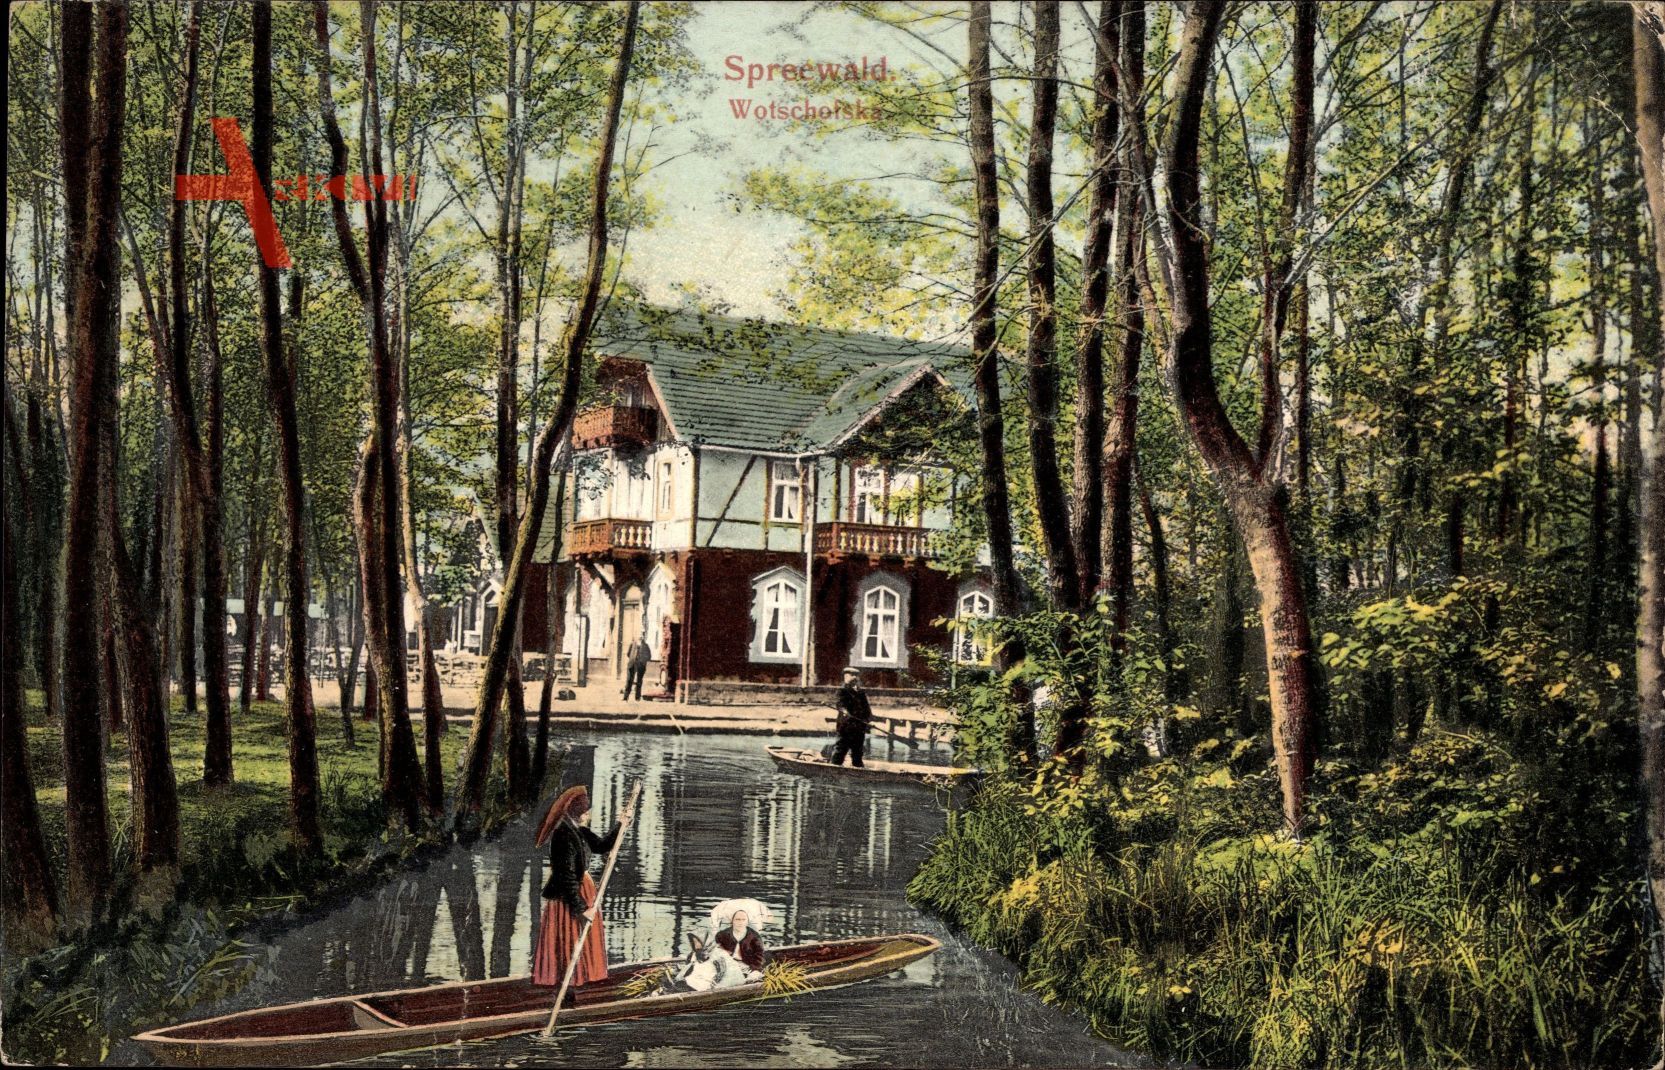 Lübbenau im Spreewald, Flusspartie mit Spreewaldkahn, Fachwerkhaus